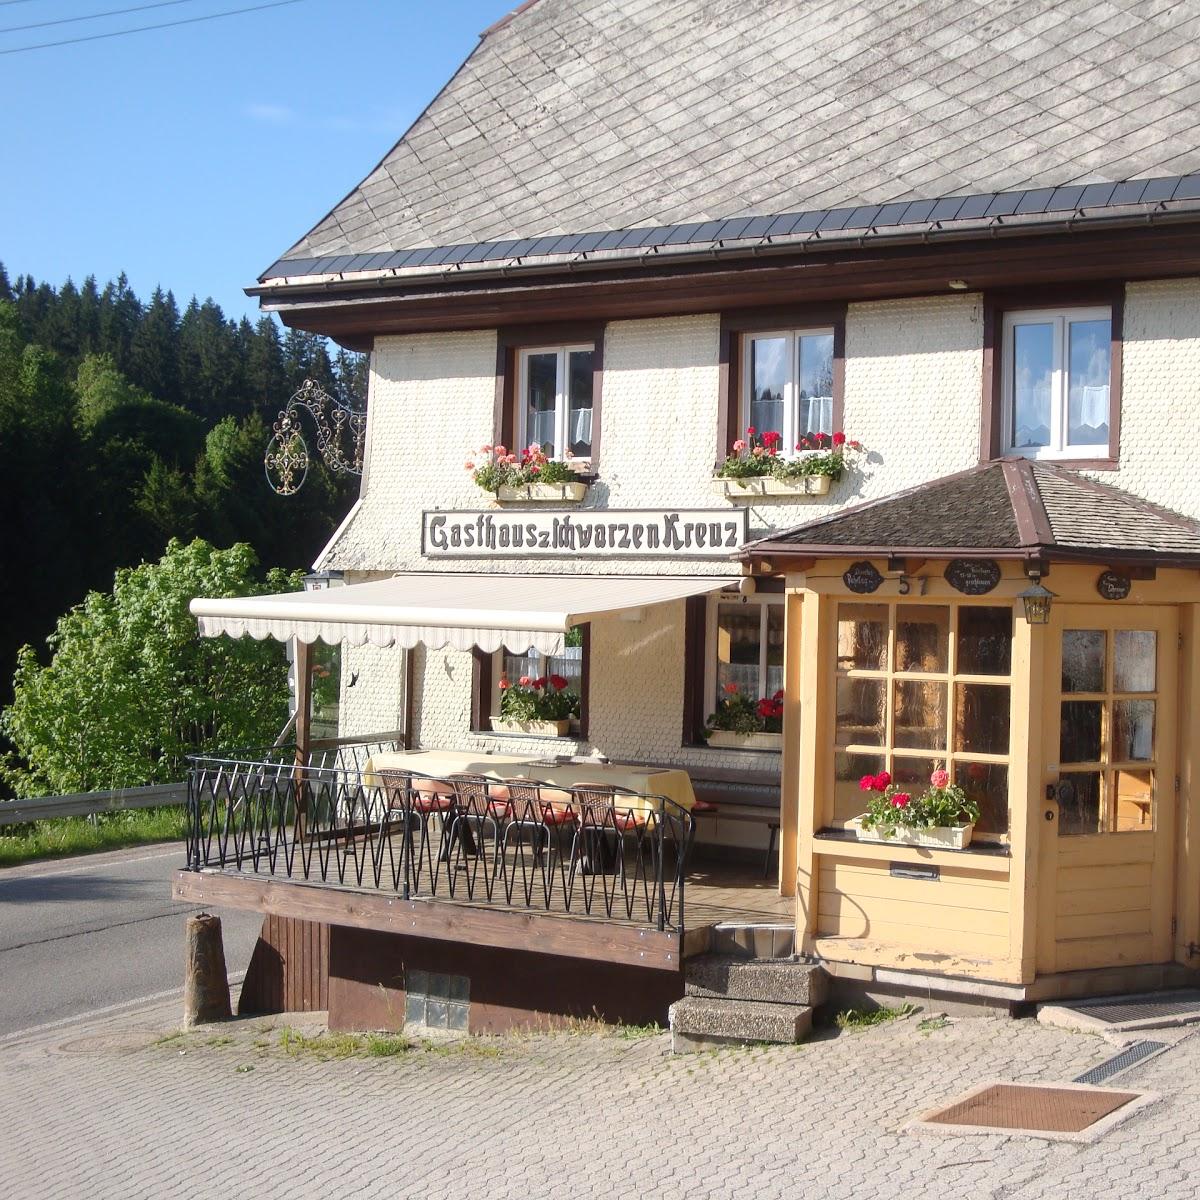 Restaurant "Gasthaus zum Schwarzen Kreuz" in Eisenbach (Hochschwarzwald)